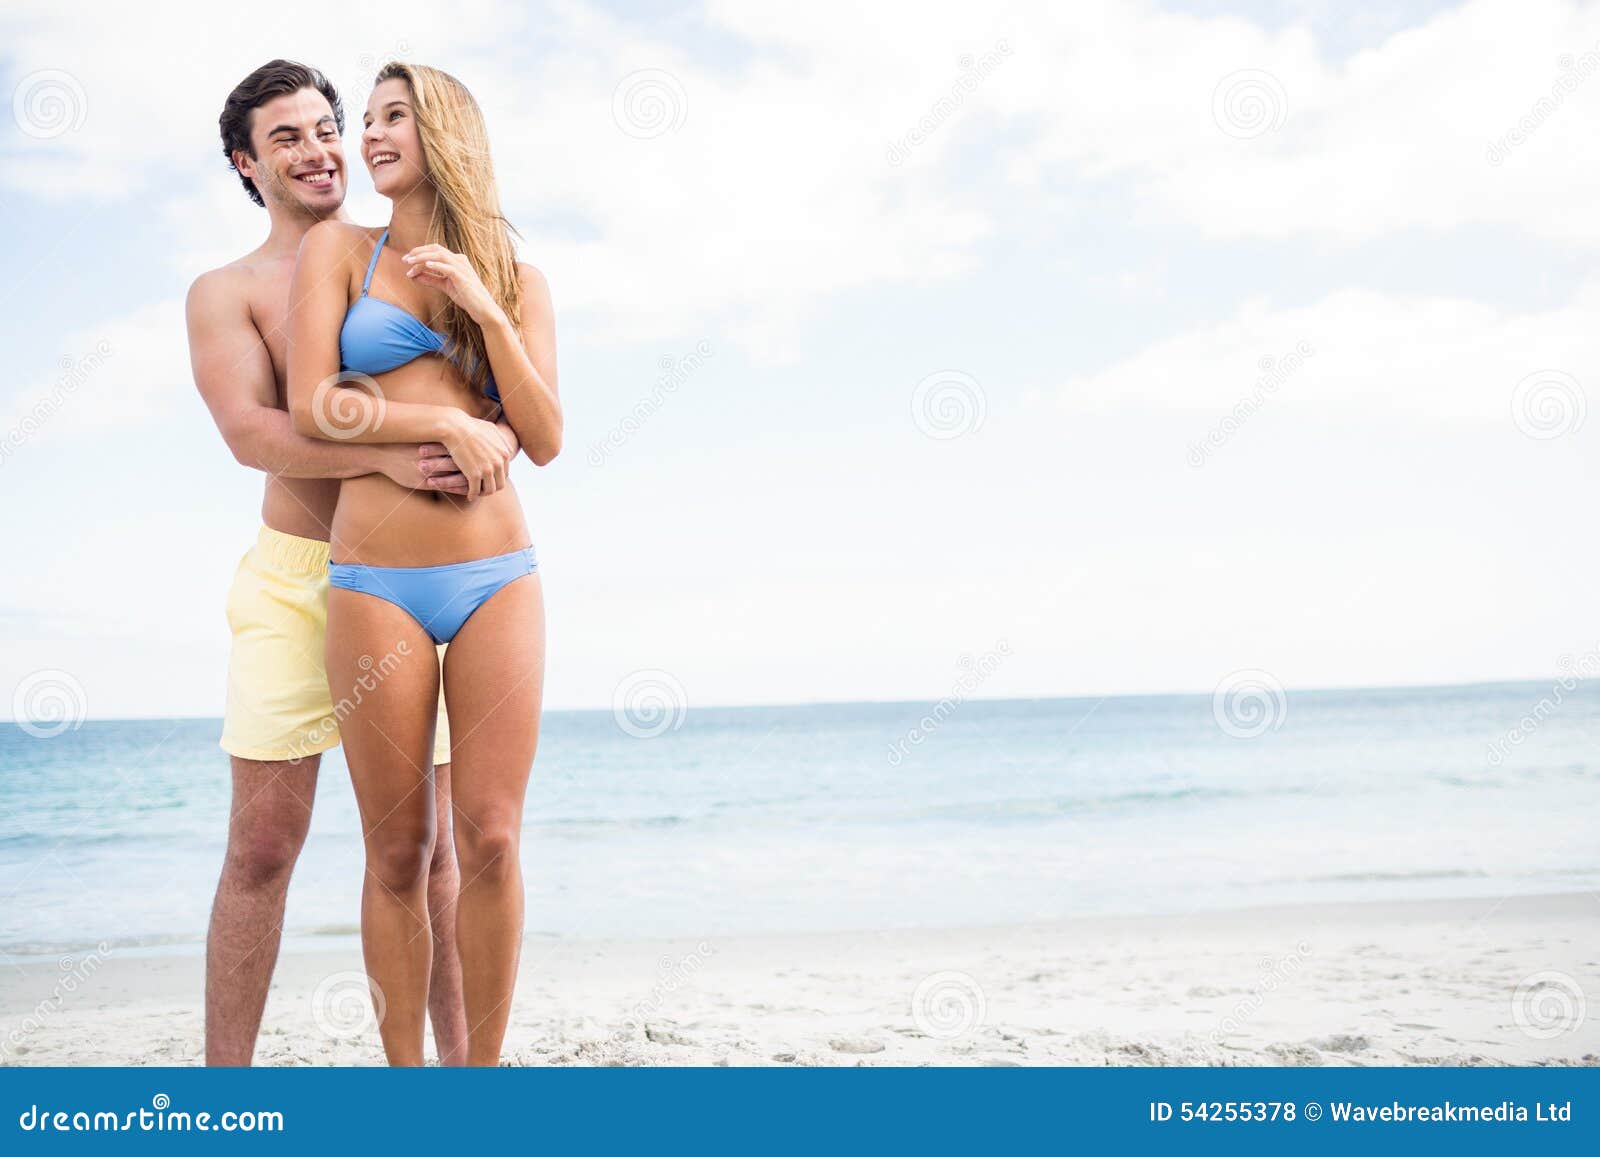 Пока муж на пляже. Купальник для пары. Пара в купальниках на пляже. Мужчина и женщина в купальниках. Девушка в купальнике с парнем.